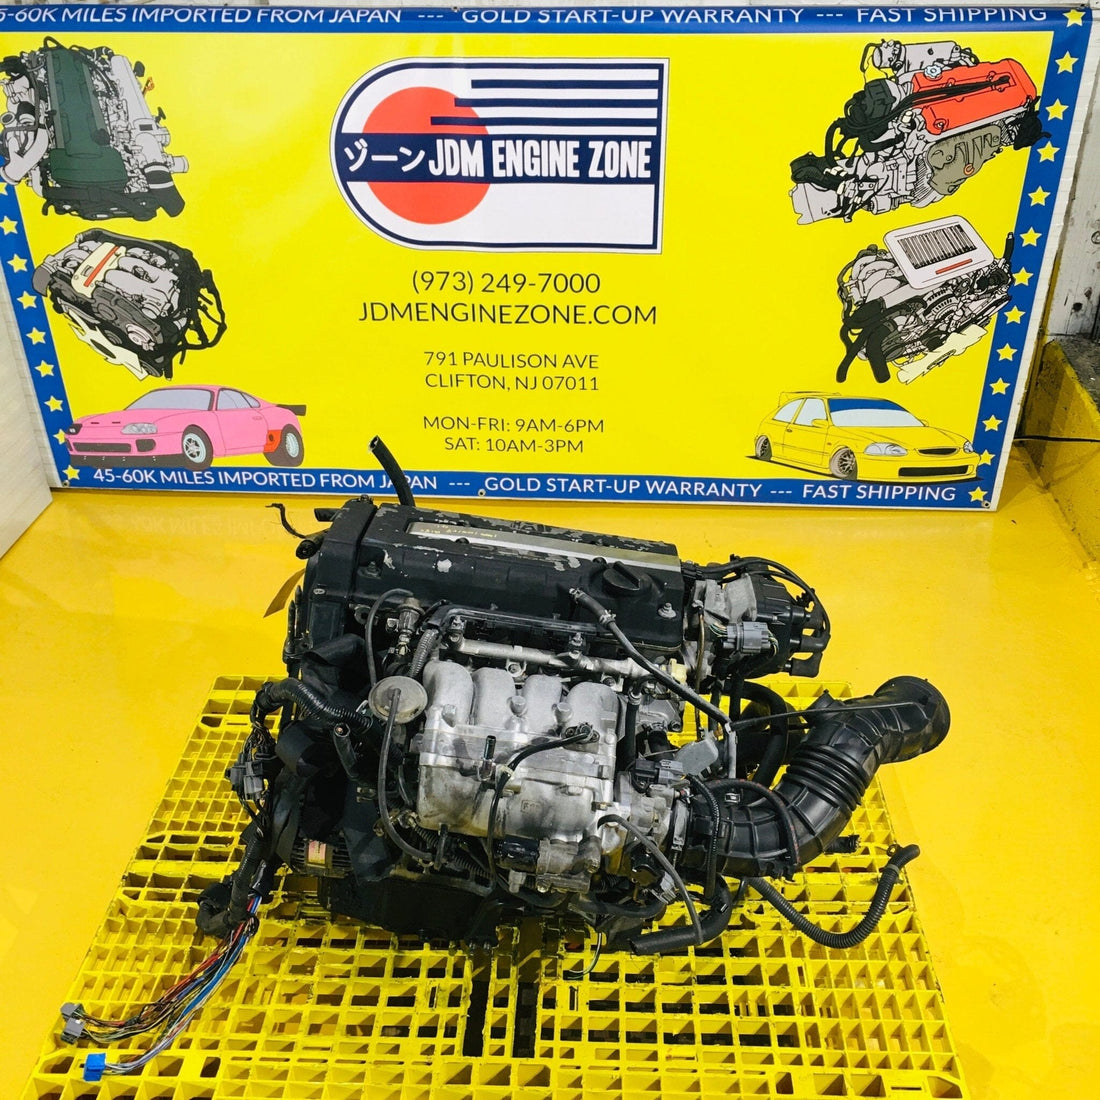 Honda Acura Integra GSR 1996-2001 1.8L DOHC VTEC JDM Engine - B18C